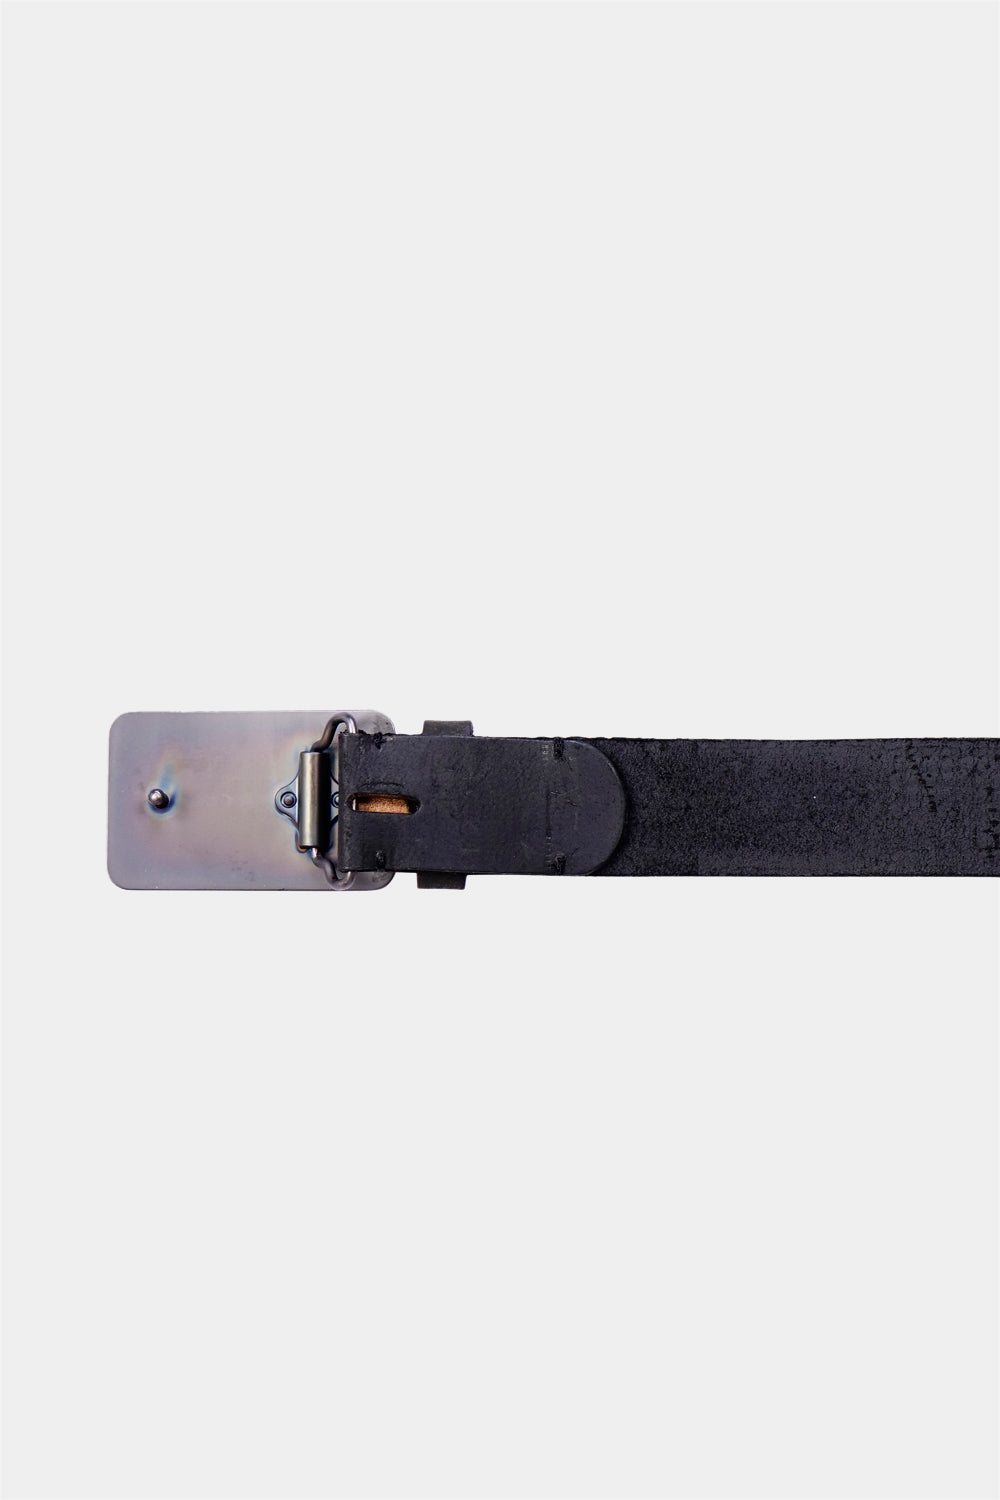 Justanned Solid Black Dots Men'S Leather Belt